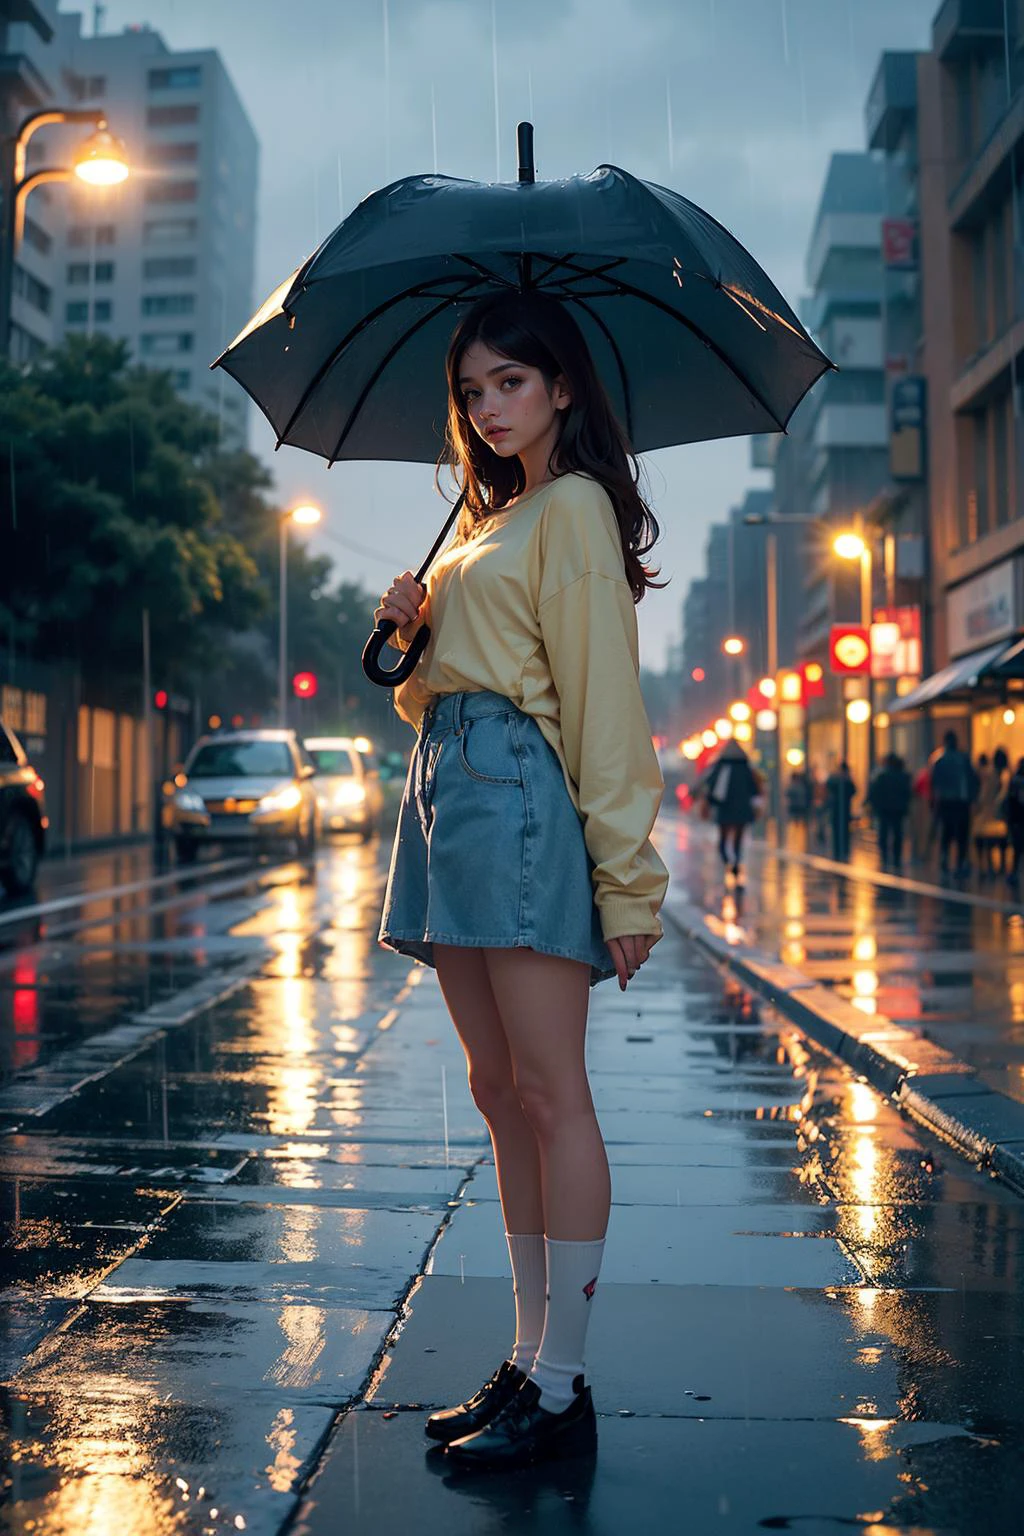 (((우산을 들고))), (전신샷) 22세 스페인 여성, ((비를 맞다)), (((비 속에 서서))) (((우산을 들고))), 긴 황금빛 갈색 머리, 녹색 눈, ((오버사이즈 셔츠를 입고, 하이탑 양말)), (최고의 품질, 걸작:1.2), (사실적인), 귀여운, 도시 풍경, 밤, 많은 비, 젖은, 광자 매핑, 라디오시티, 물리 기반 렌더링 